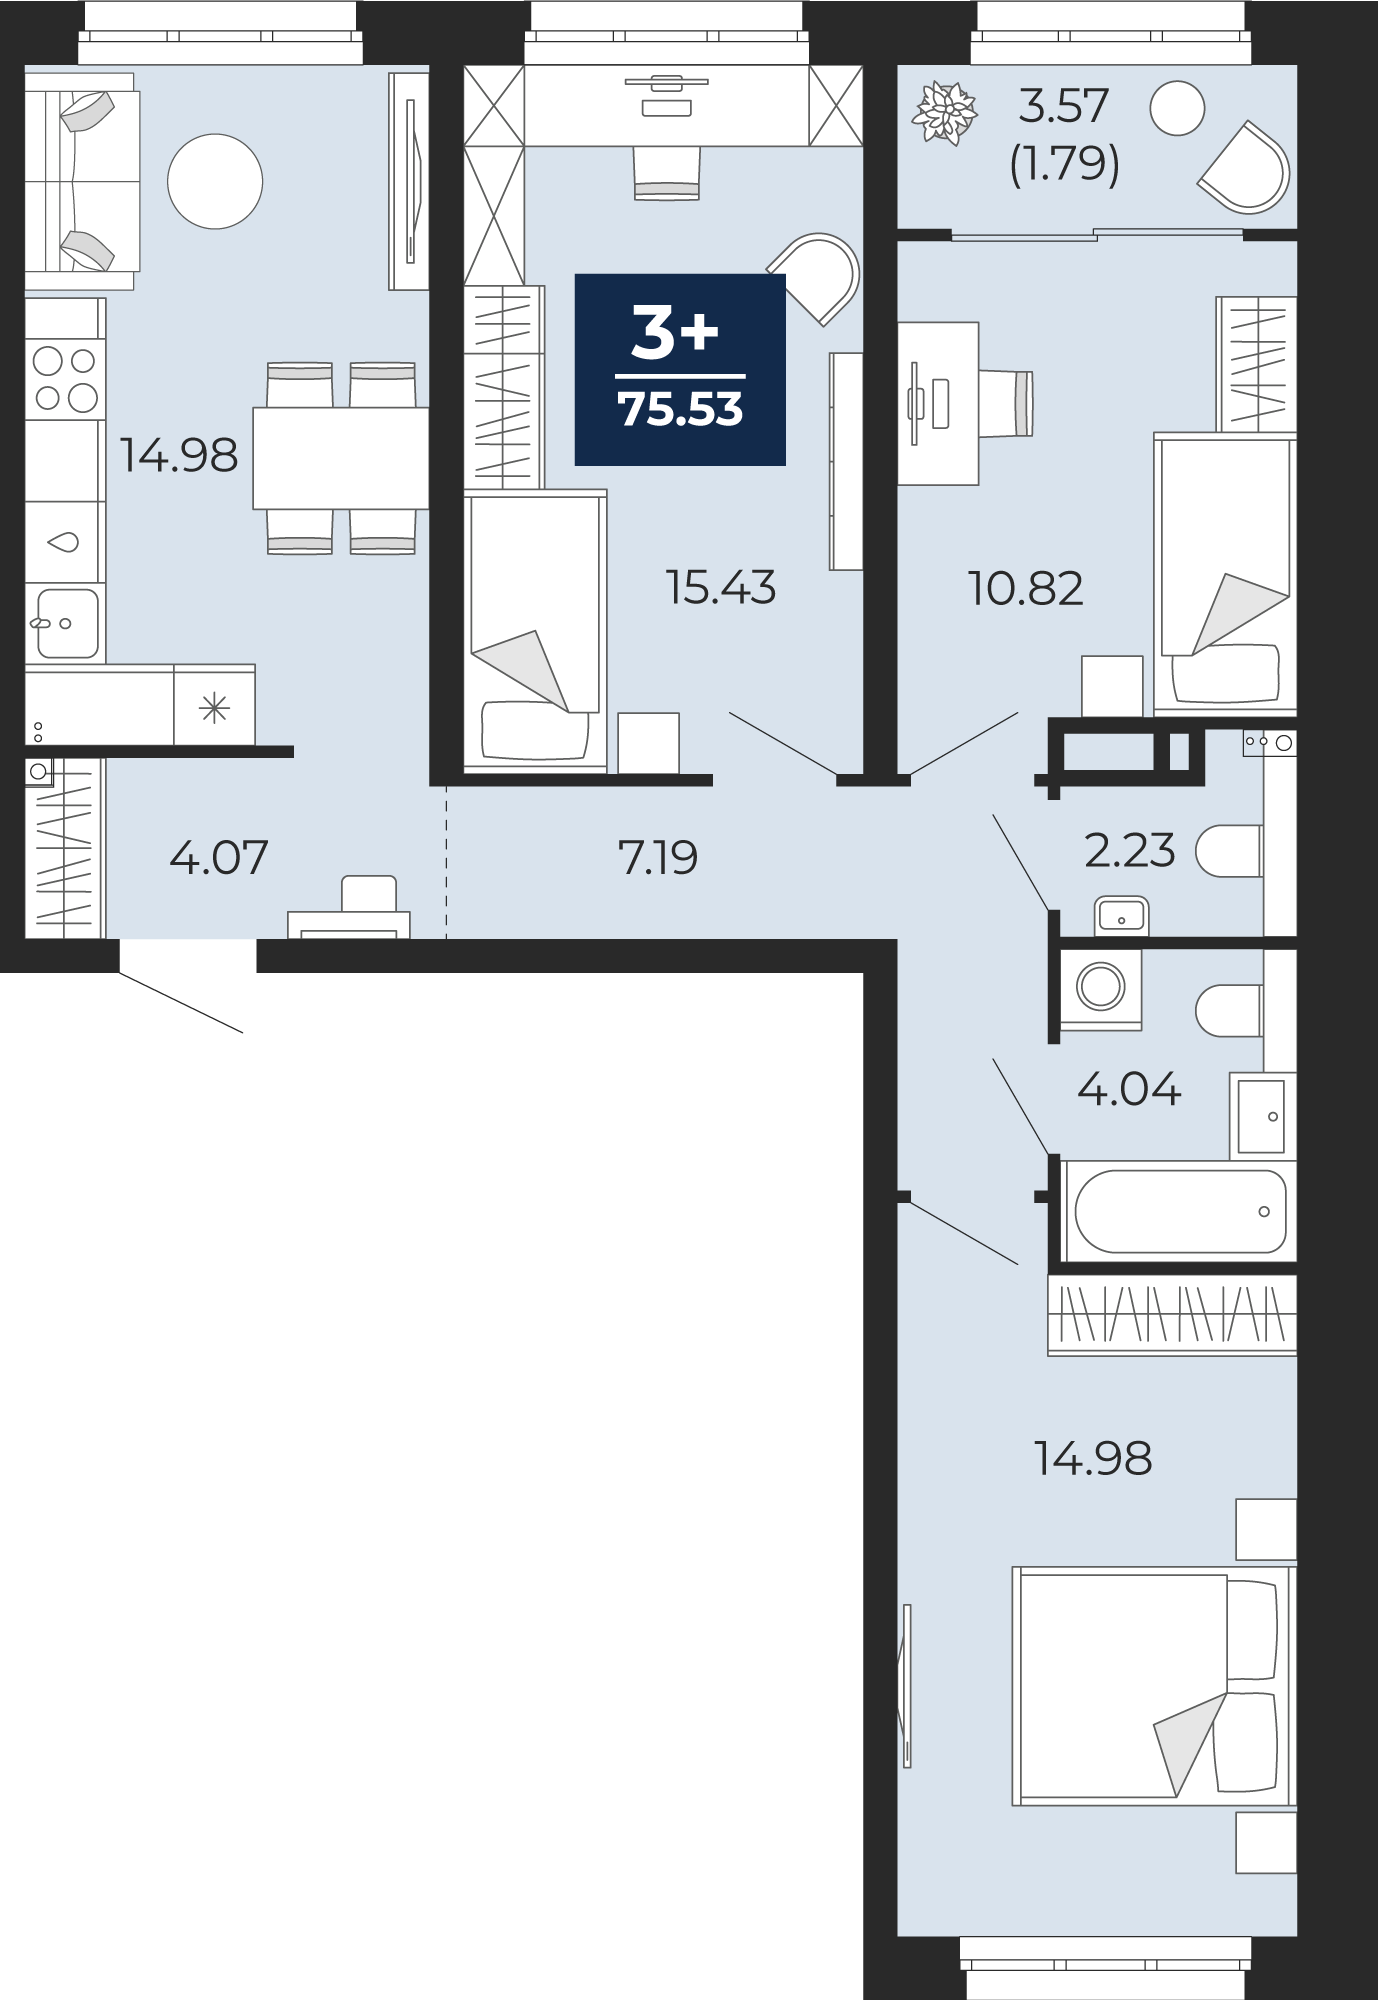 Квартира № 38, 3-комнатная, 75.53 кв. м, 9 этаж